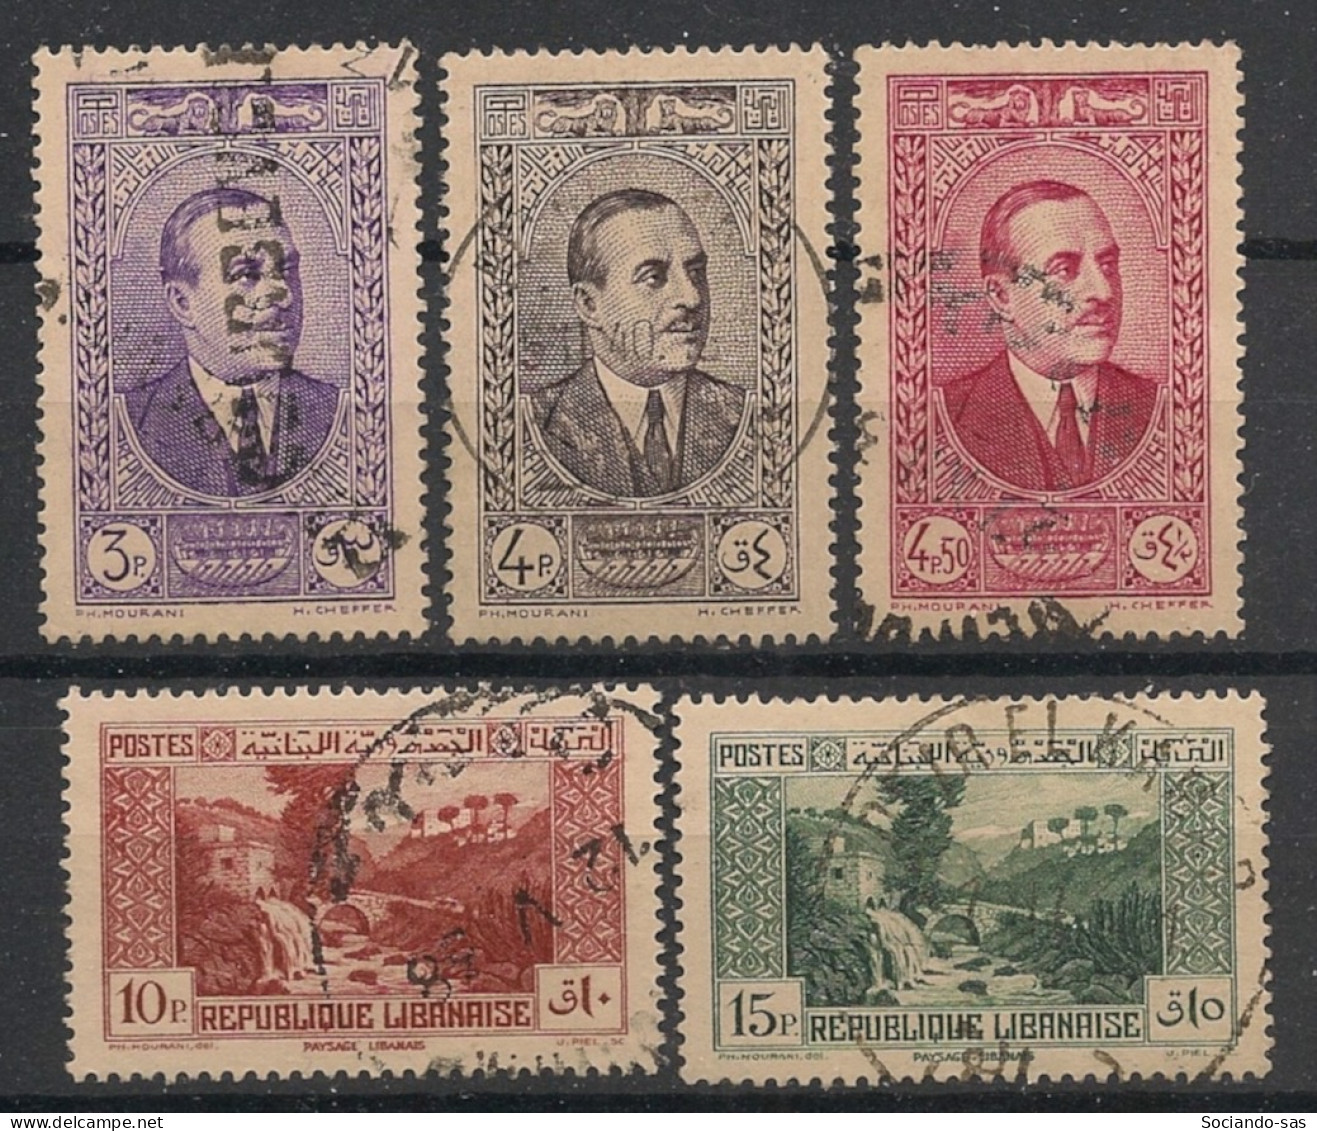 GRAND LIBAN - 1937-38 - N°YT. 152 à 156 - Série Complète - Oblitéré / Used - Usados